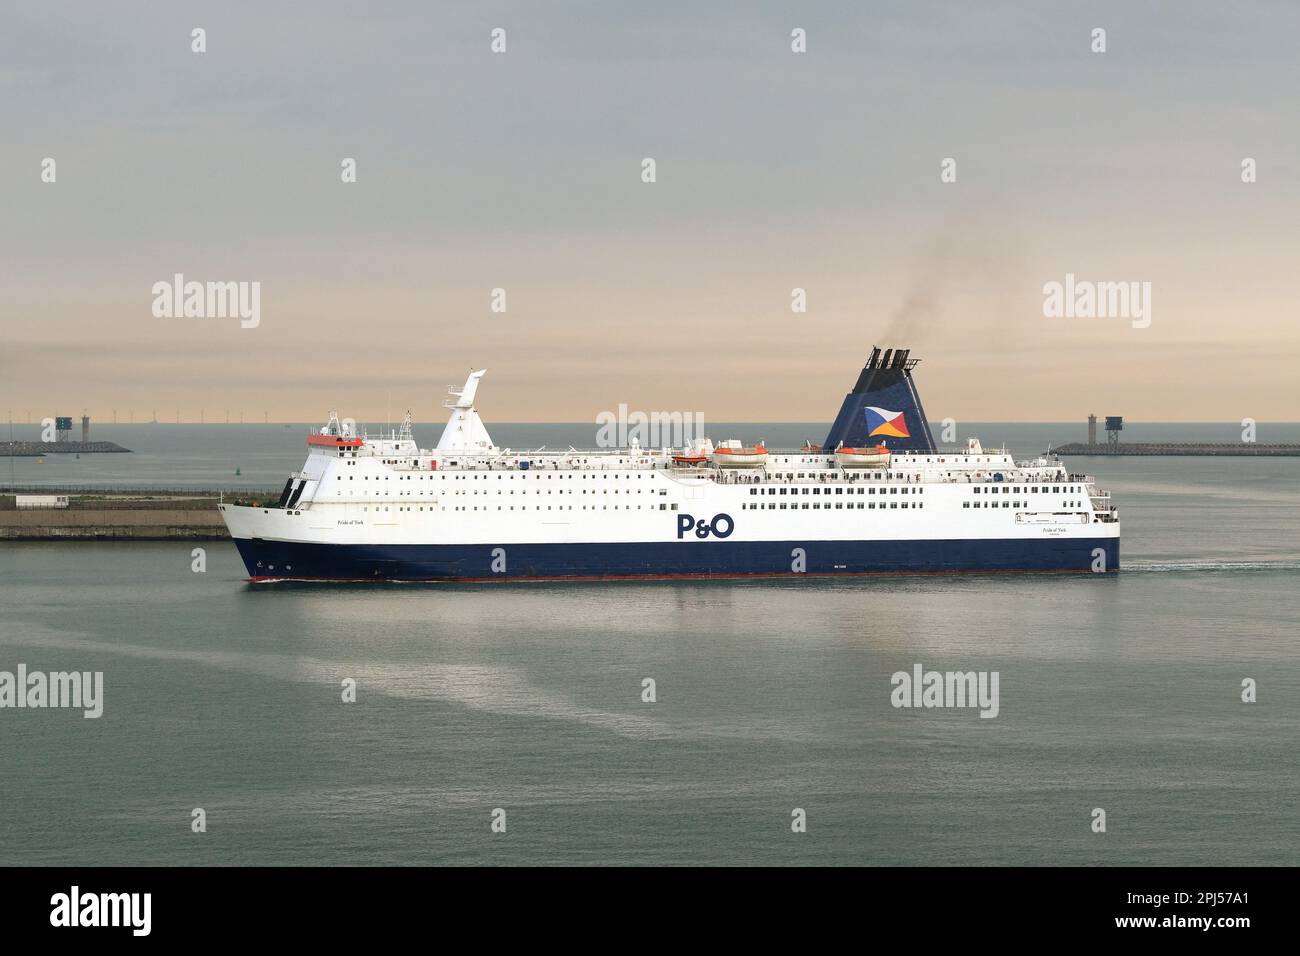 Le ferry pour voitures/passagers The Pride of York, P&O Lines, entre dans le port de Zeebrugge, en Belgique, en août 2017. Photographe : Bryn Colton Banque D'Images